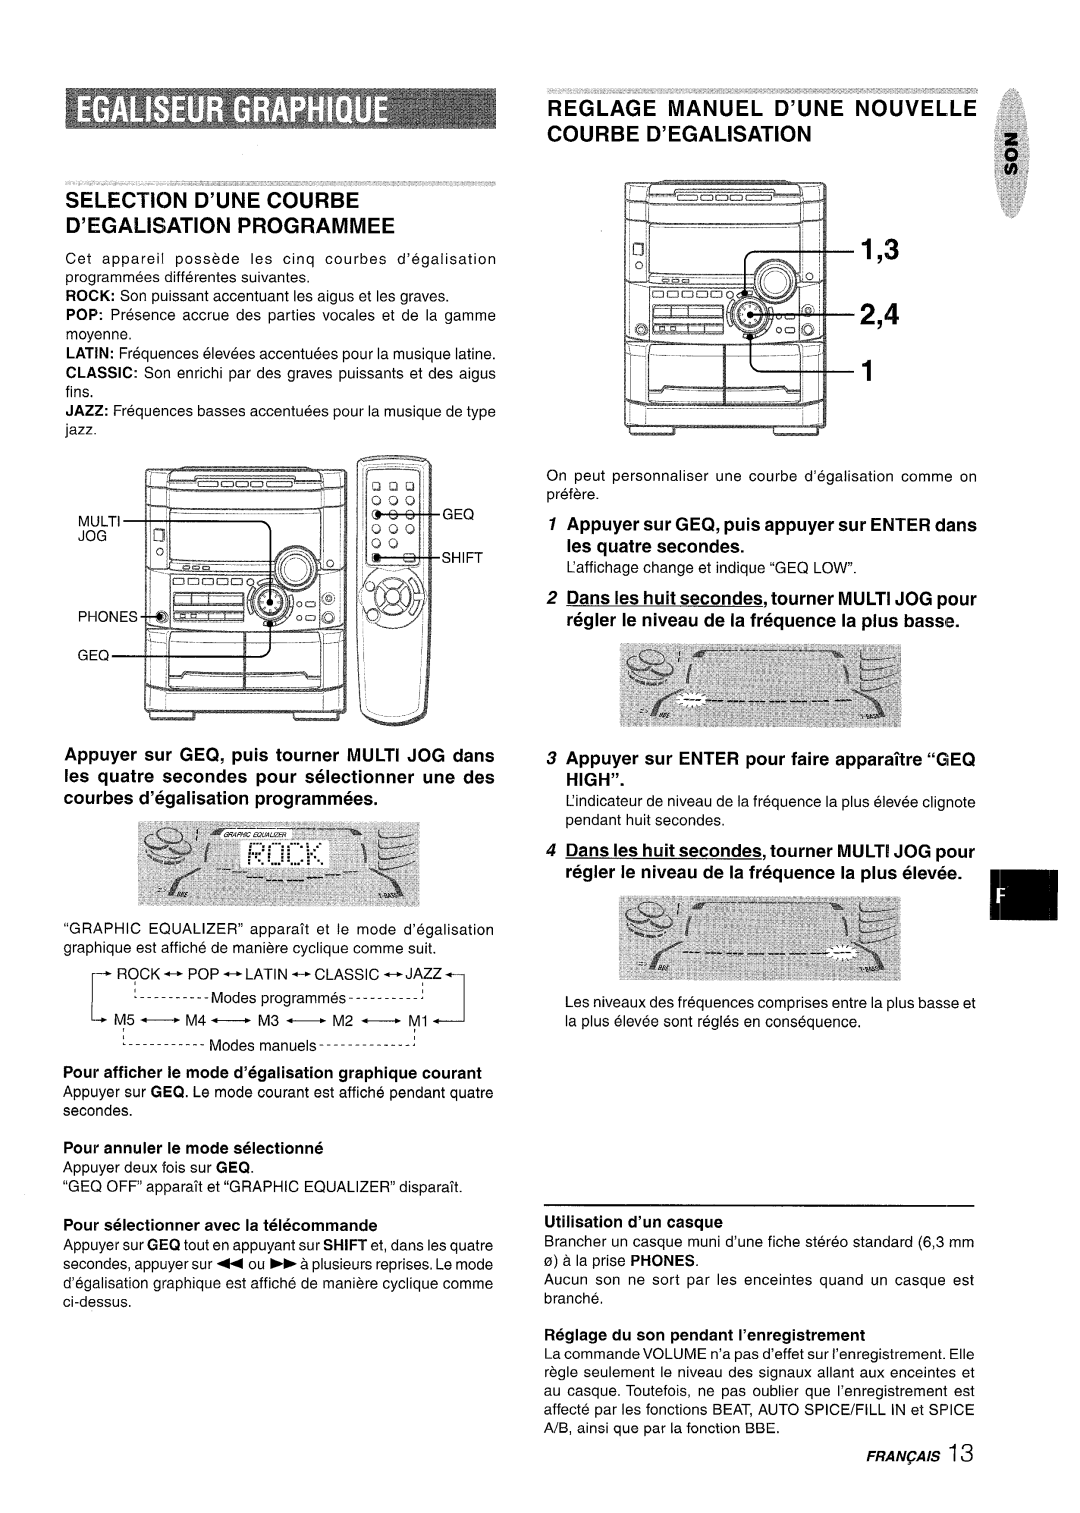 Sony NSX-A767 manual SELECTKN”D’UNE 60URBE ““, Courbe D’Egalisation, D’E5GALISATION PROGRAMMED, Utilisation d’un casque 